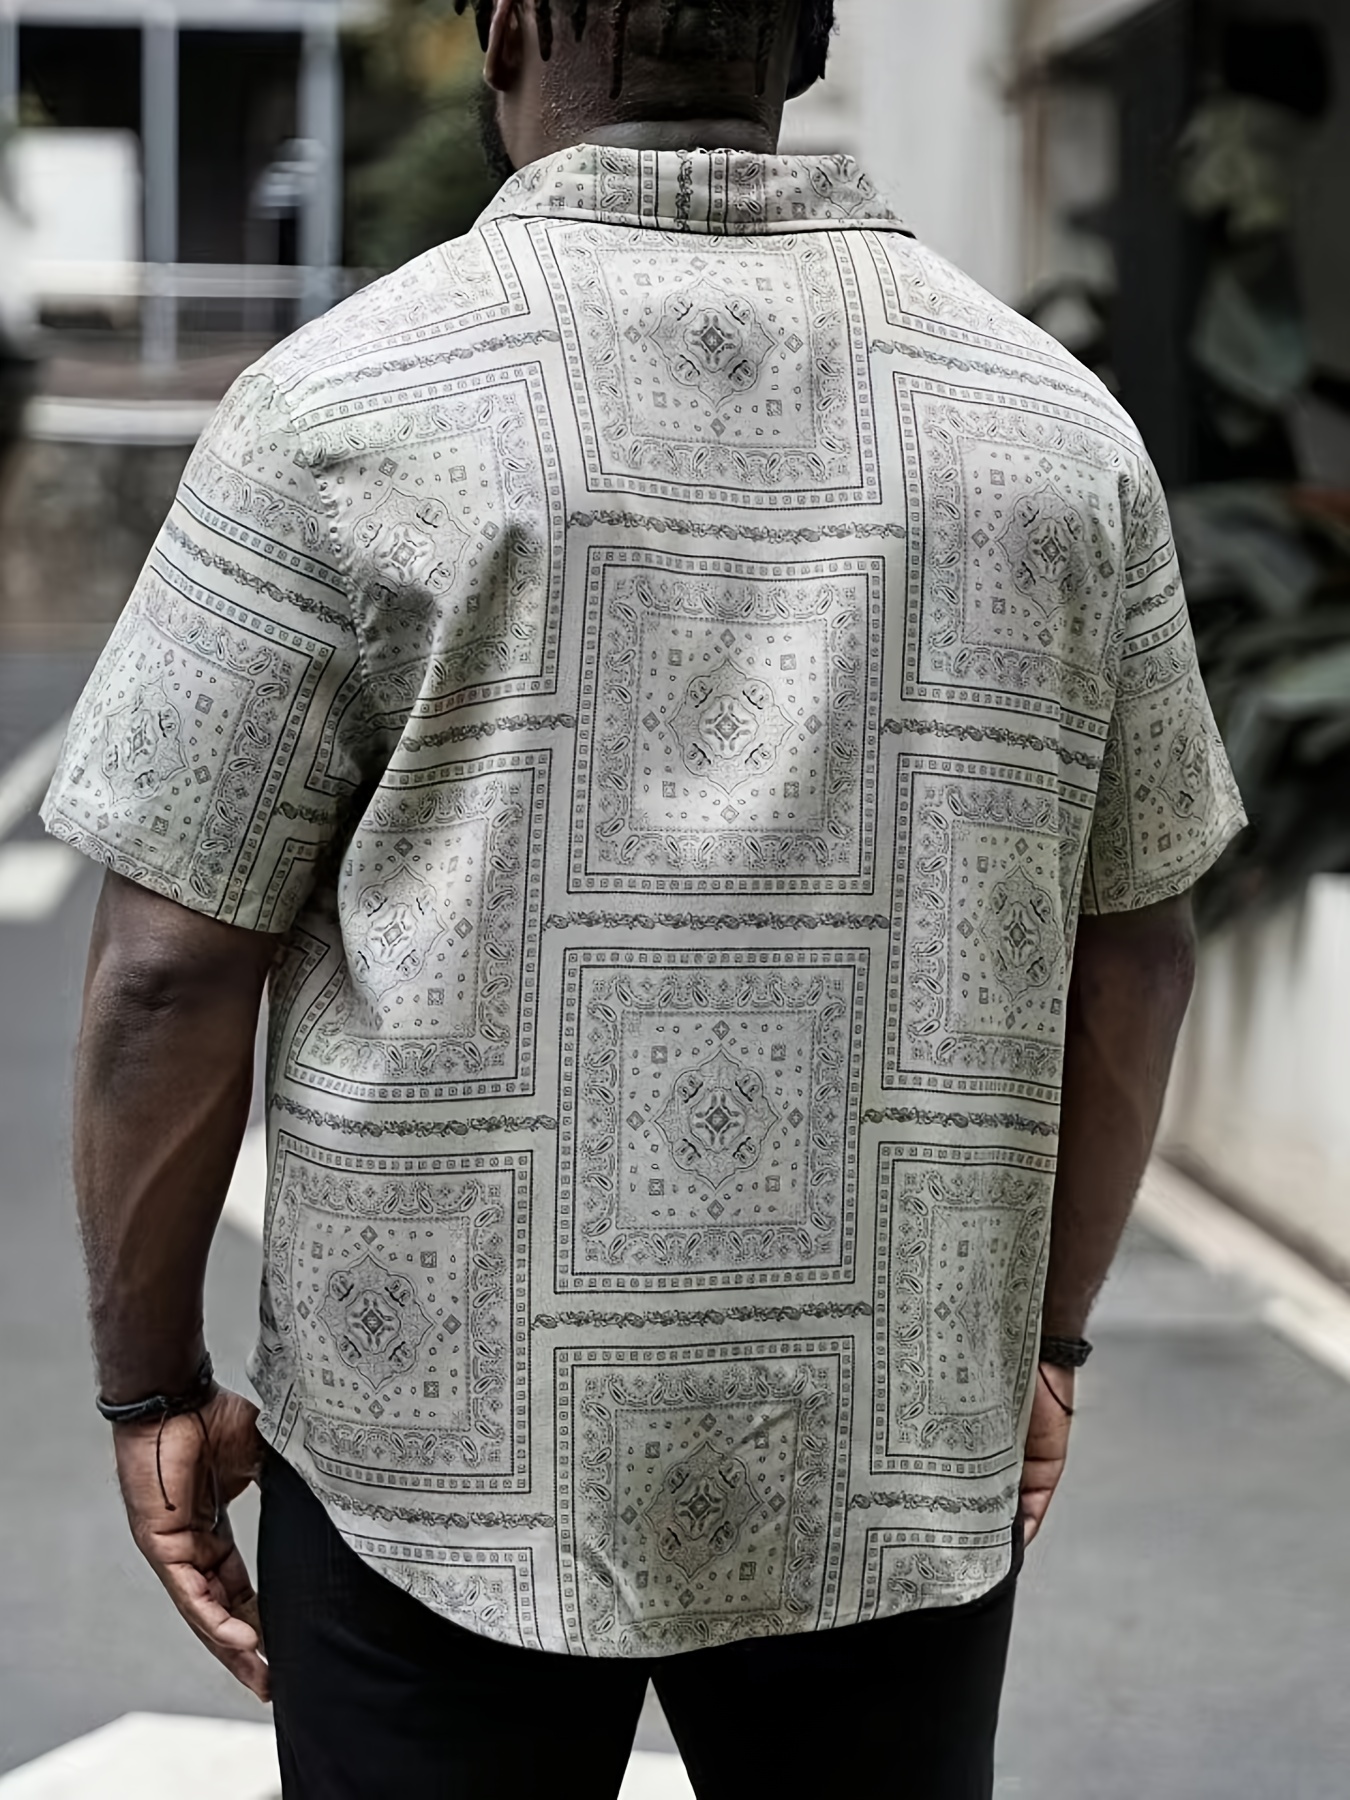 VSSSJ Men's Cotton and Linen Shirts Plus Size Ethnic Print Long